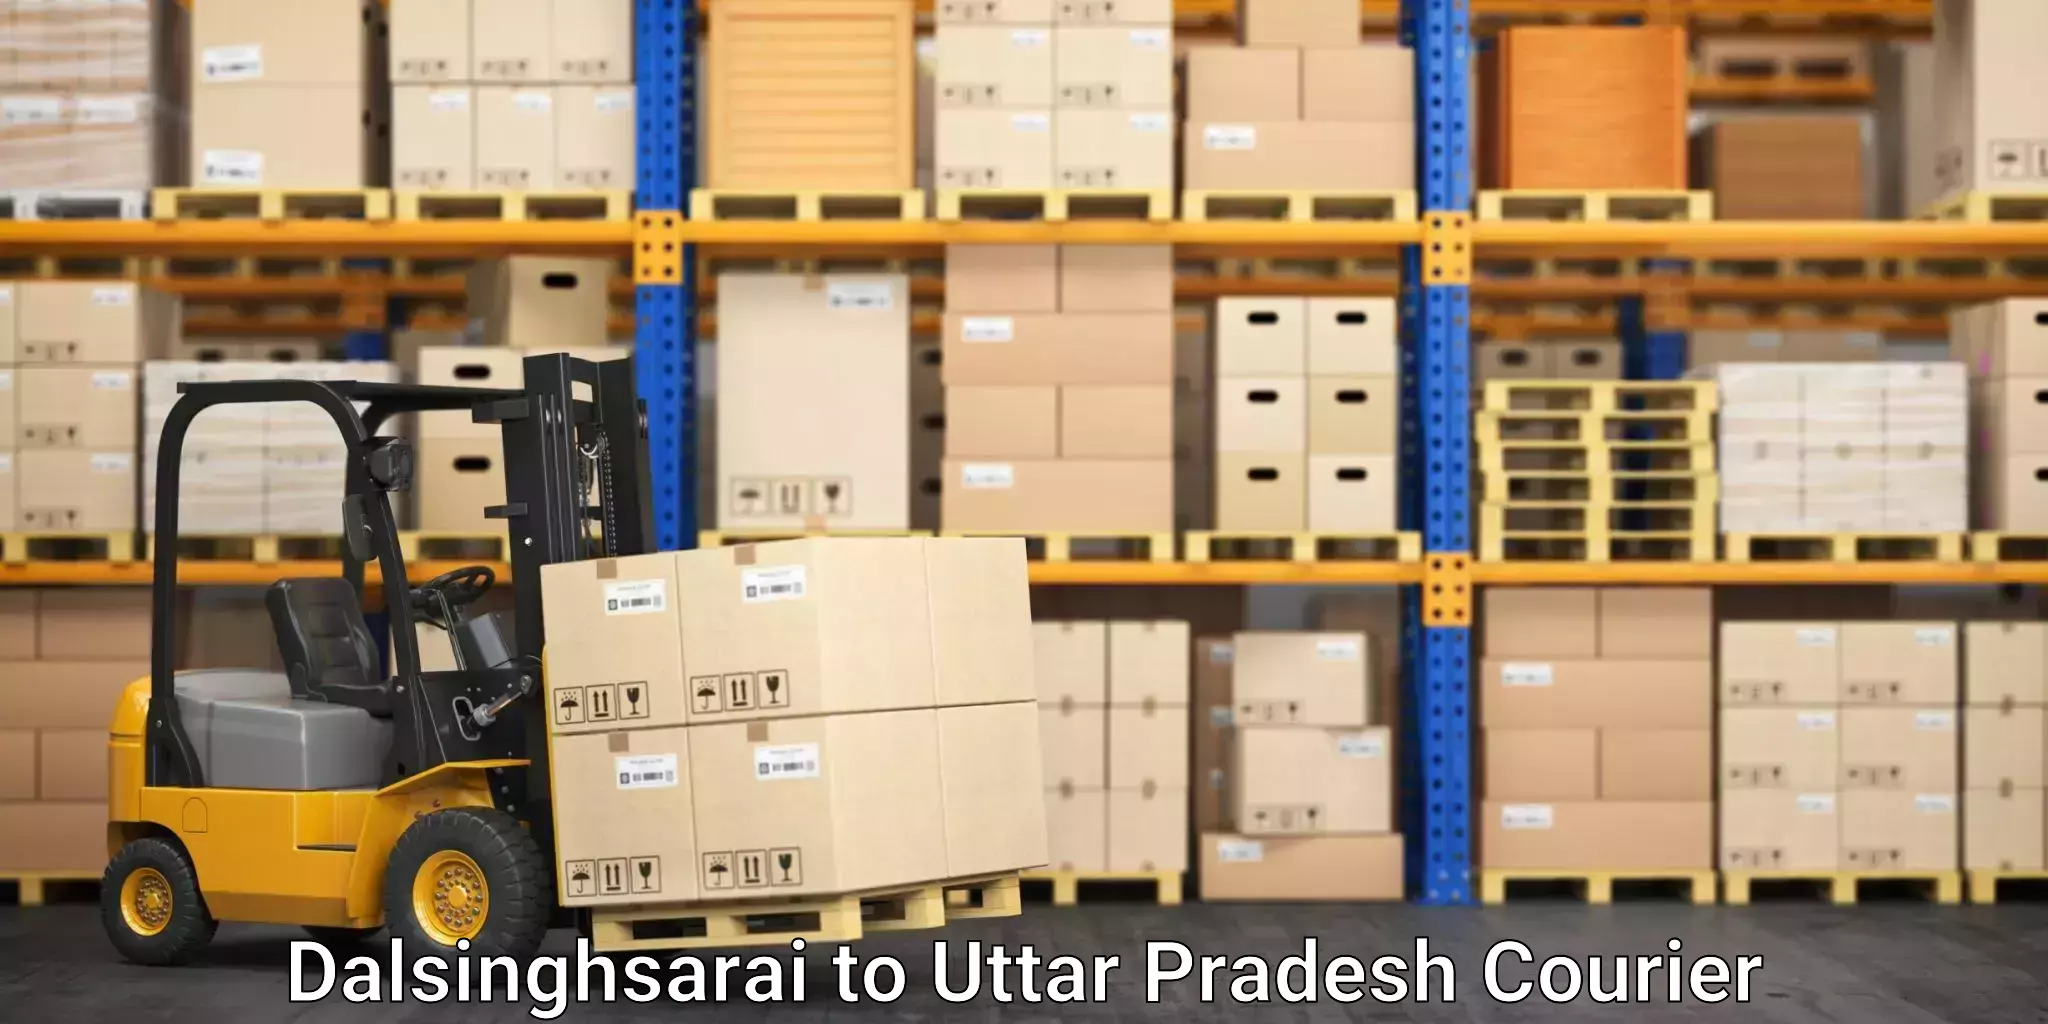 Premium moving services Dalsinghsarai to Rath